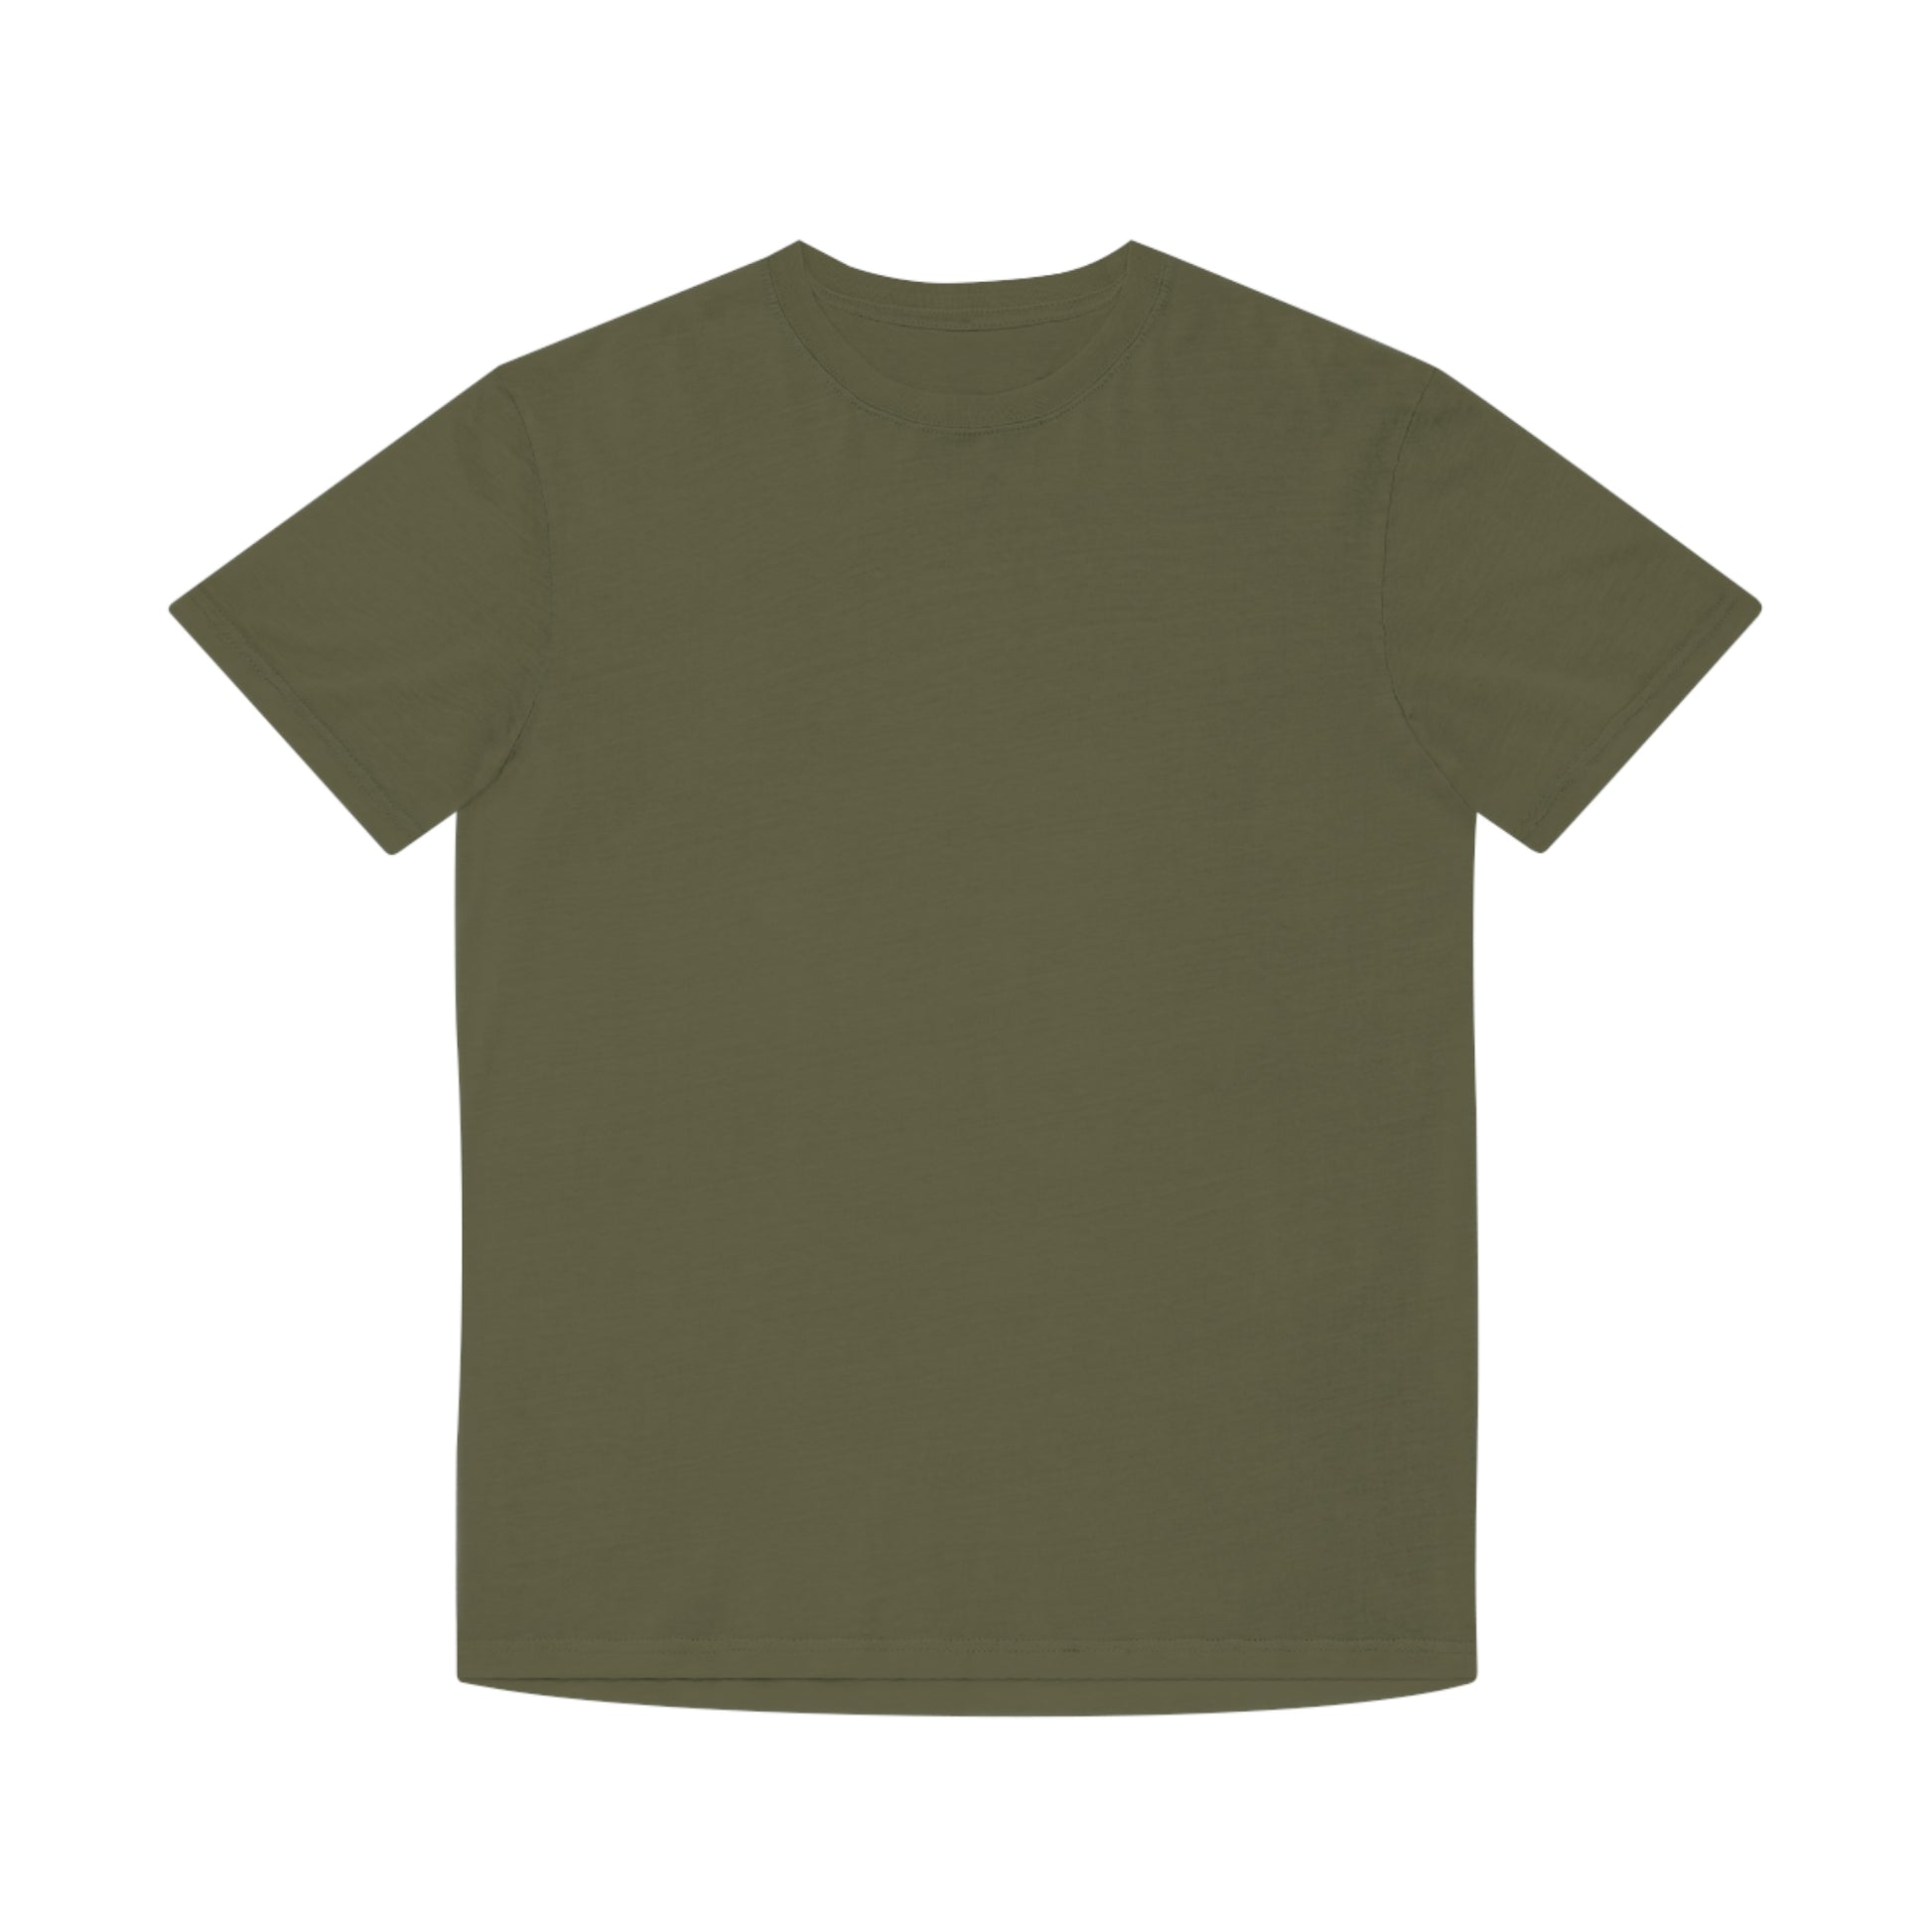 Faded Army Tshirt Australian Printer